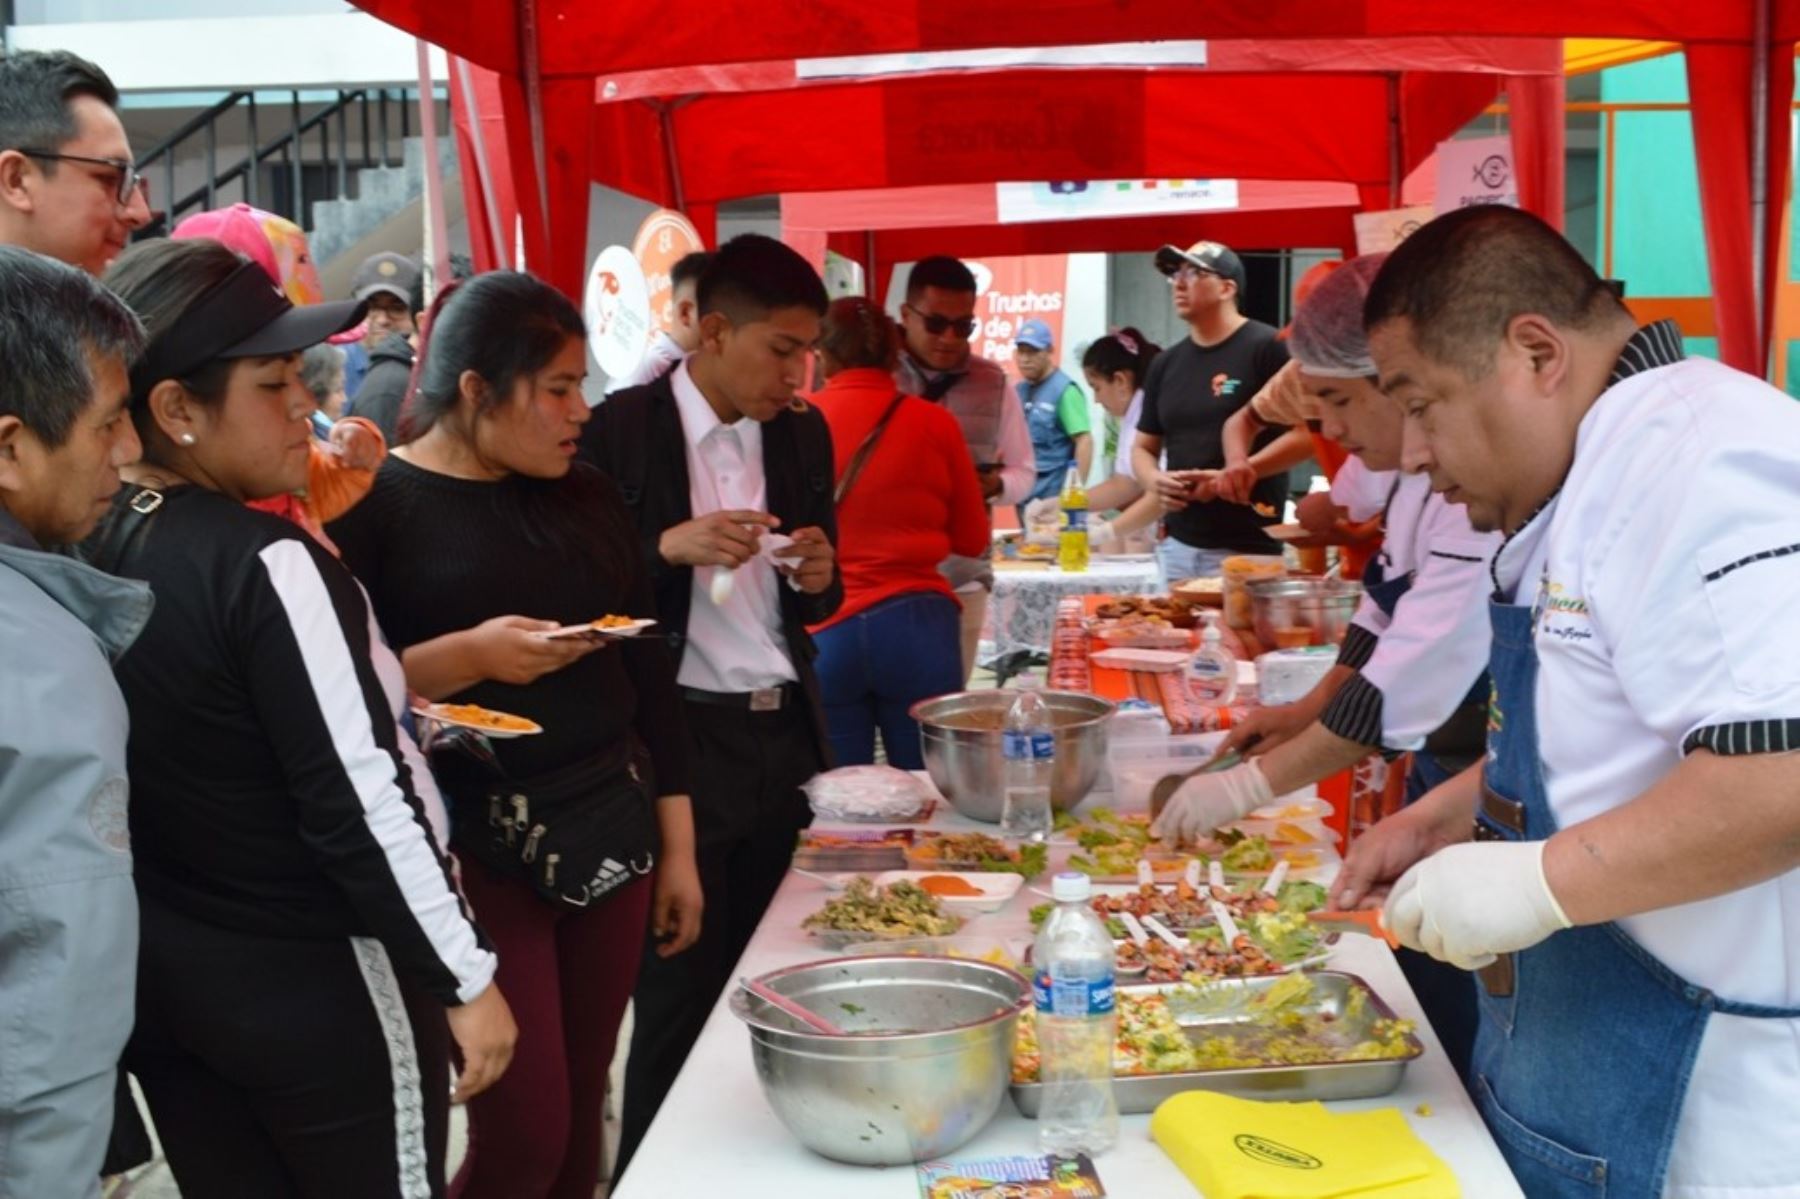 Trece cebicherías y marisquerías participaron en la feria gastronómica organizada por la municipalidad provincial de Cajamarca, con motivo de Semana Santa. Foto: Cortesía Eduard Lozano